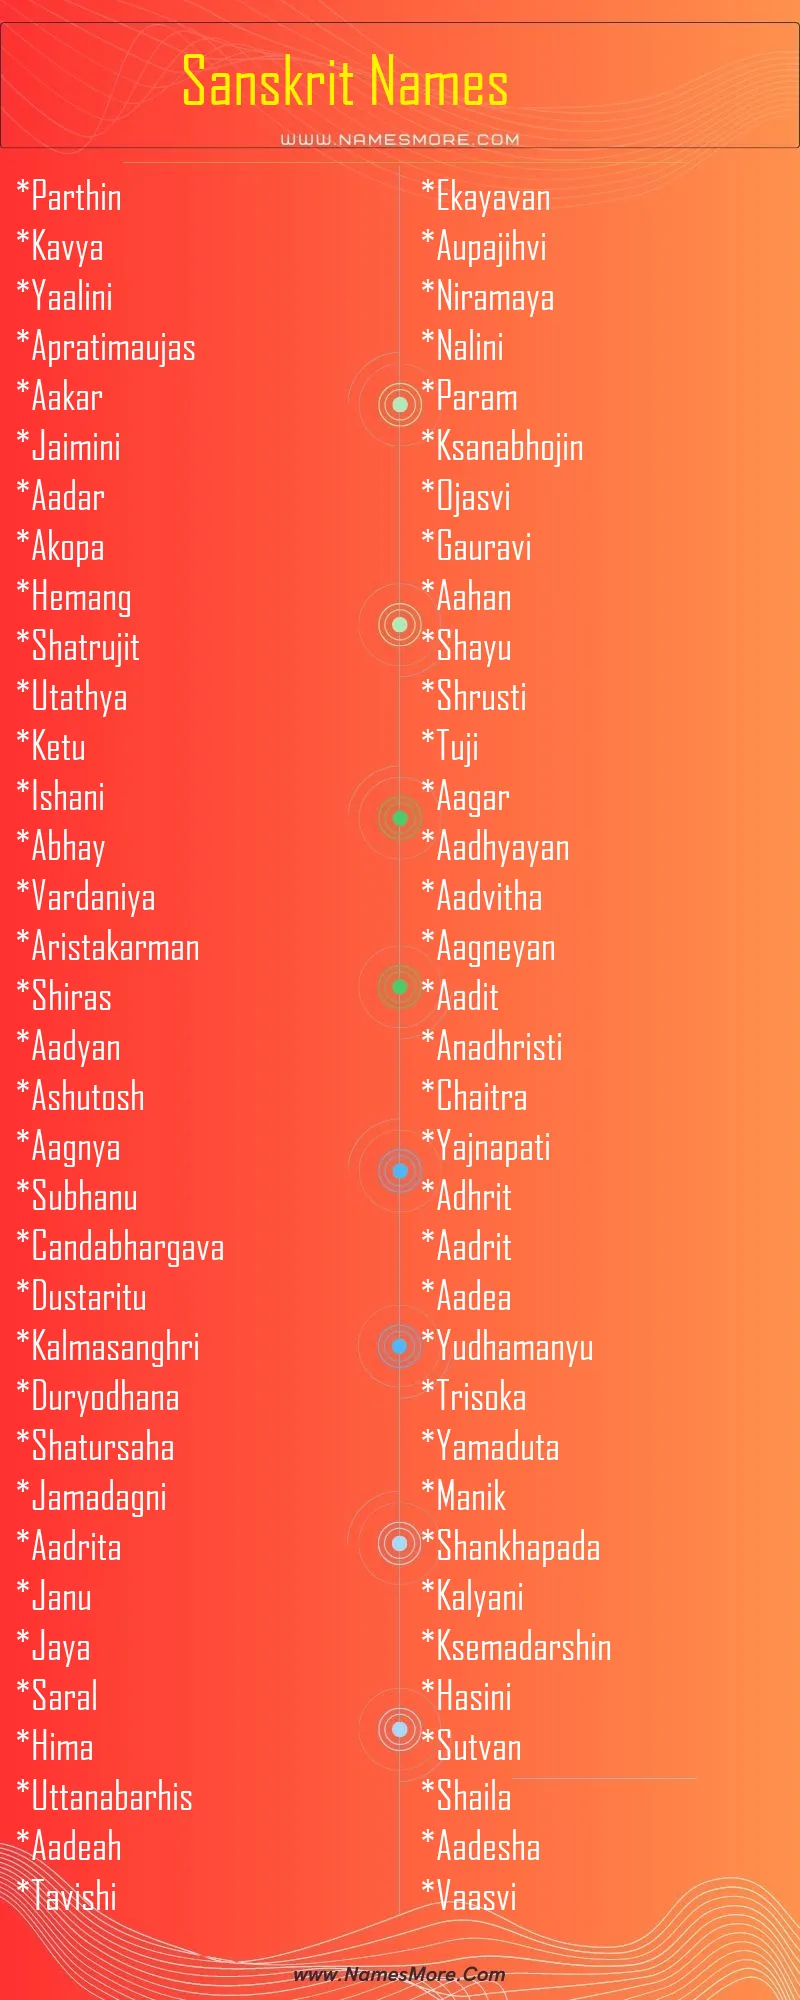 Sanskrit Names List Infographic